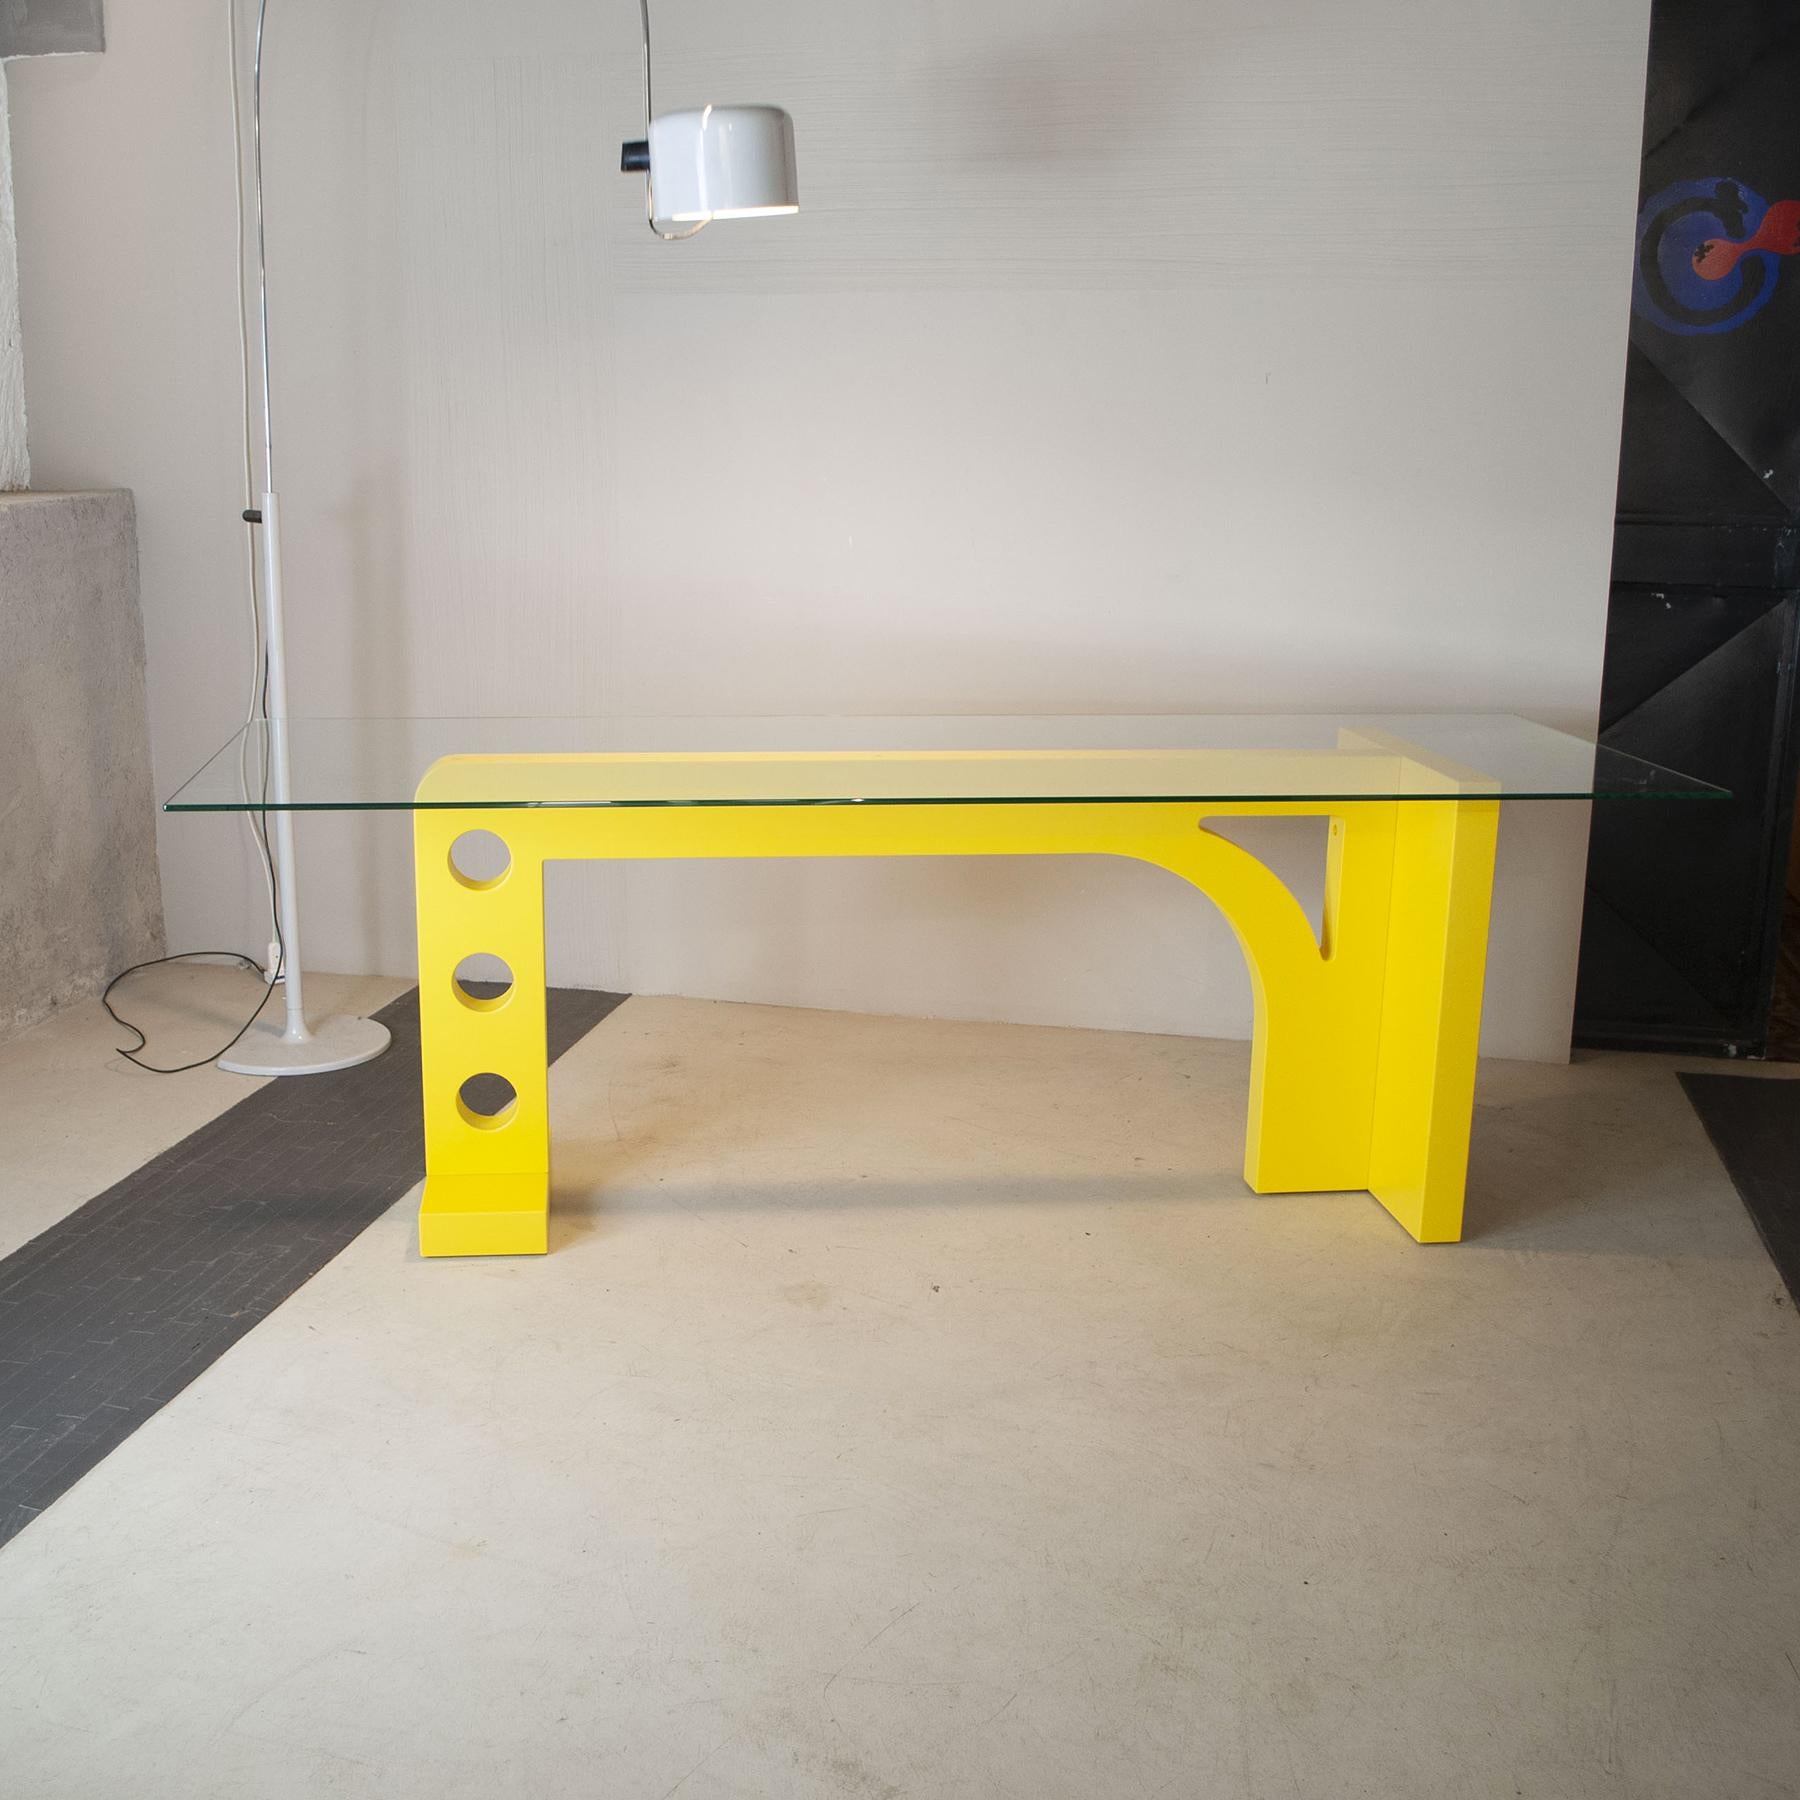 Table de la série Meccano réalisée par l'équipe de design de Cellule Creative Studio pour un espace futuriste, la table s'inspire de certains éléments du célèbre jeu Meccano et du grand architecte italien Cesar Leonardi, la couleur vibrante est un